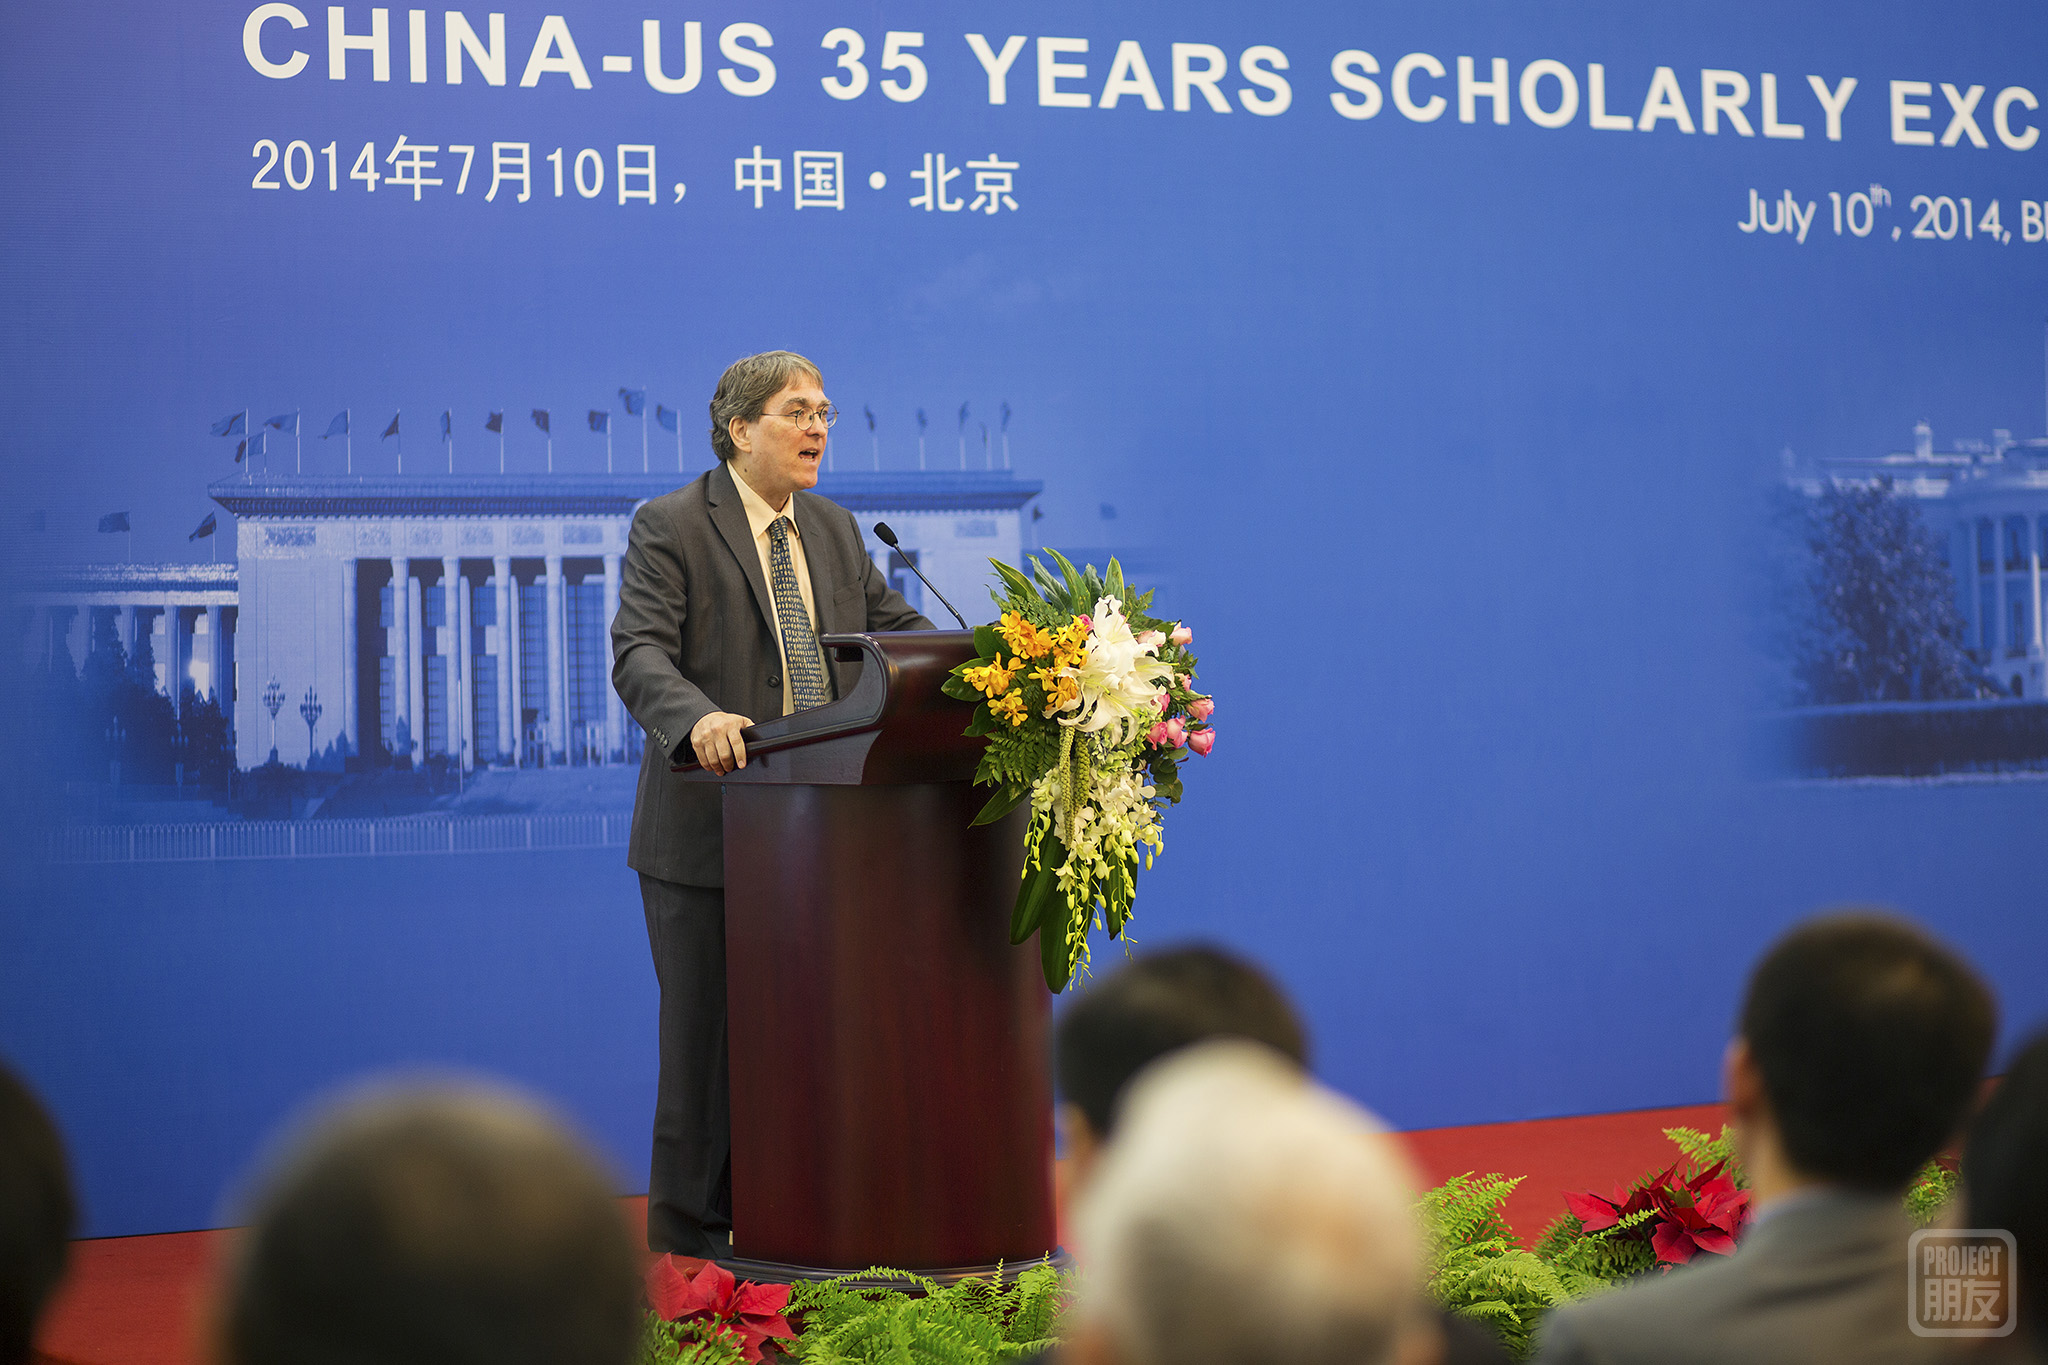 David Moser, Academic Director at CET Chinese Studies.